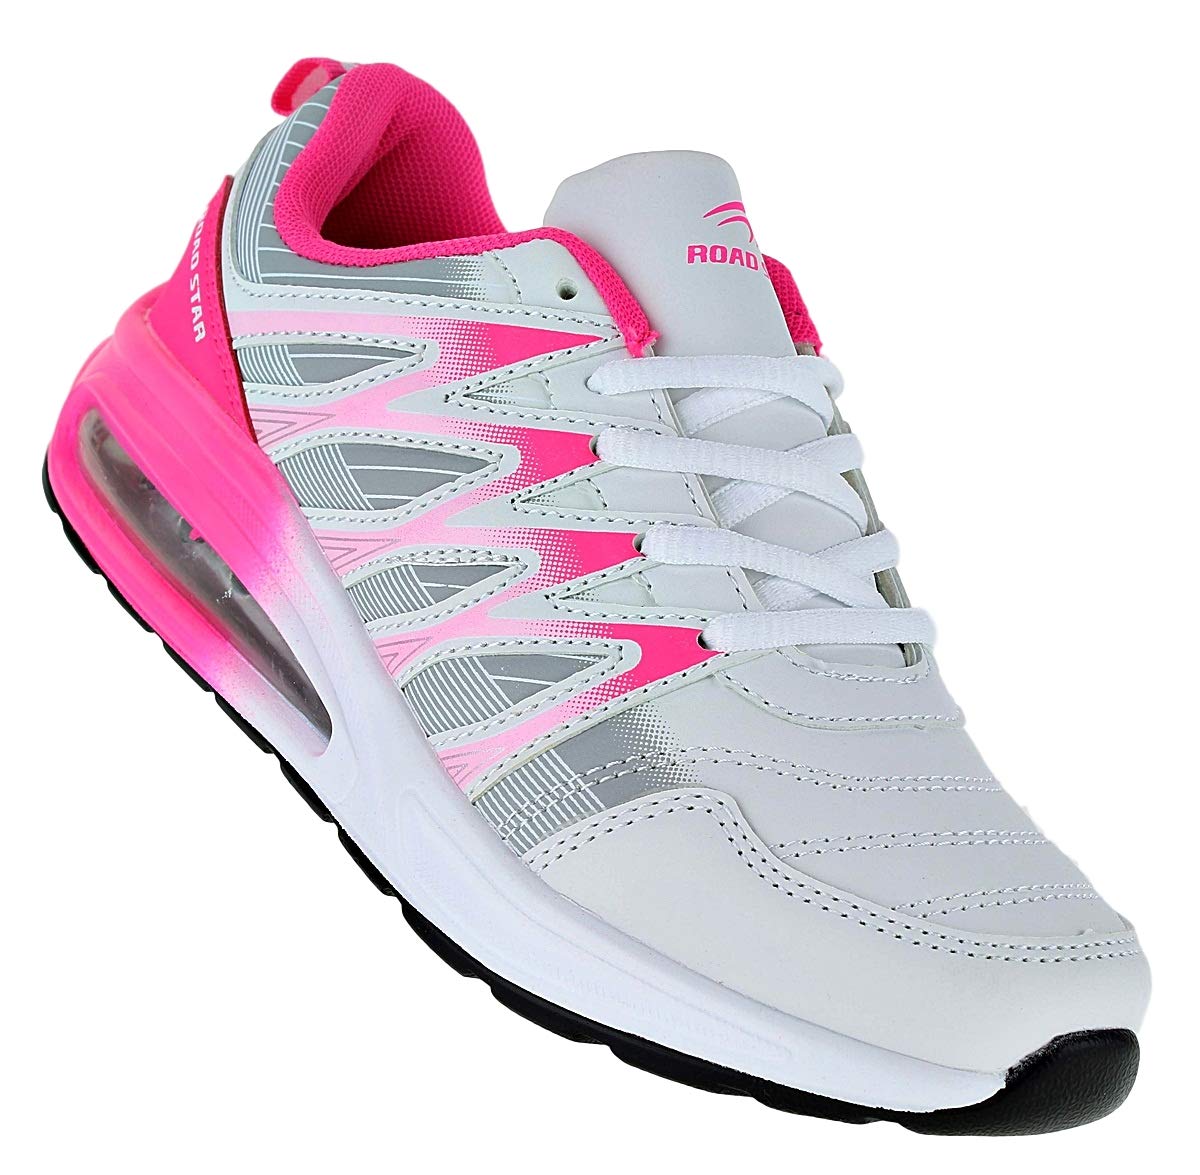 Bootsland Neon Turnschuhe Sneaker Sportschuhe Luftpolster Unisex 002, Schuhgröße:38, Farbe:Weiß/Pink